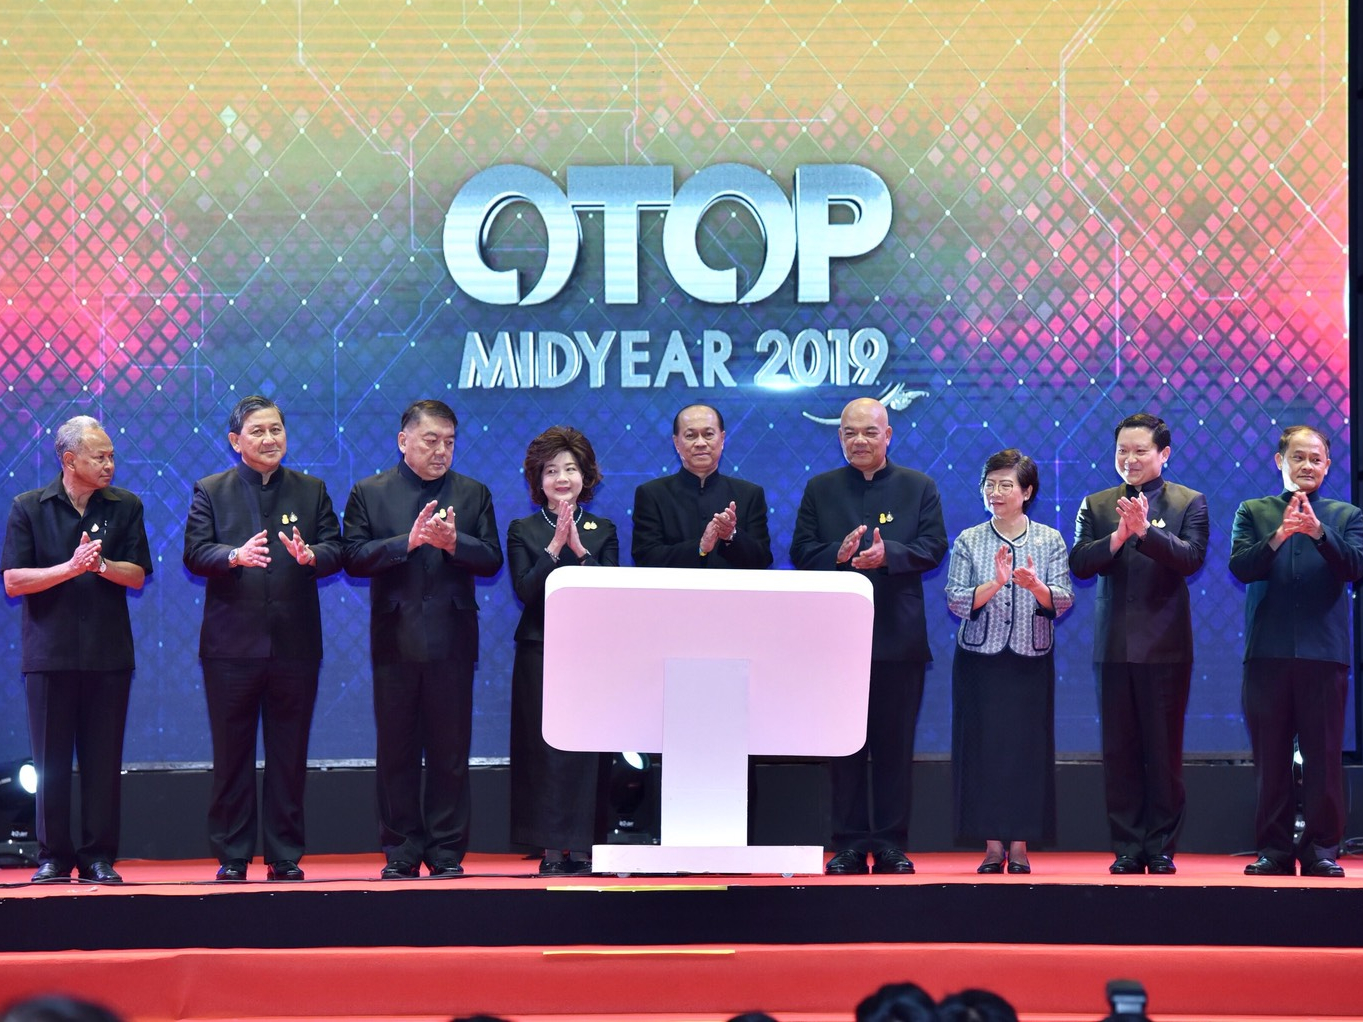 พิธีเปิด งาน OTOP Midyear 2019 : OTOP Signature รักษาเอกลักษณ์ สร้างสรรค์นวัตกรรม